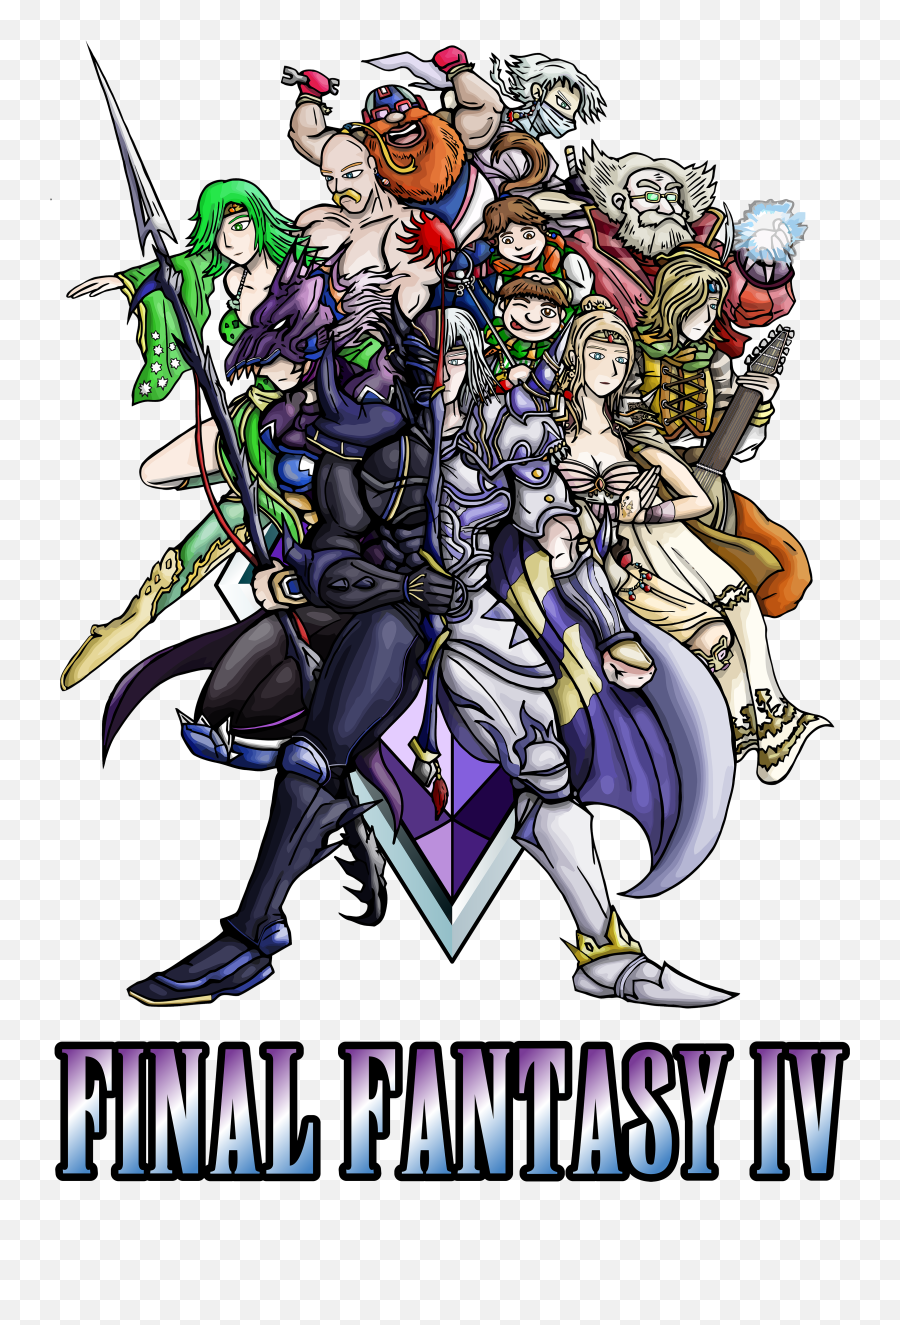 Final Fantasy Iv Heroes - Final Fantasy Iv Png,Final Fantasy Iv Logo